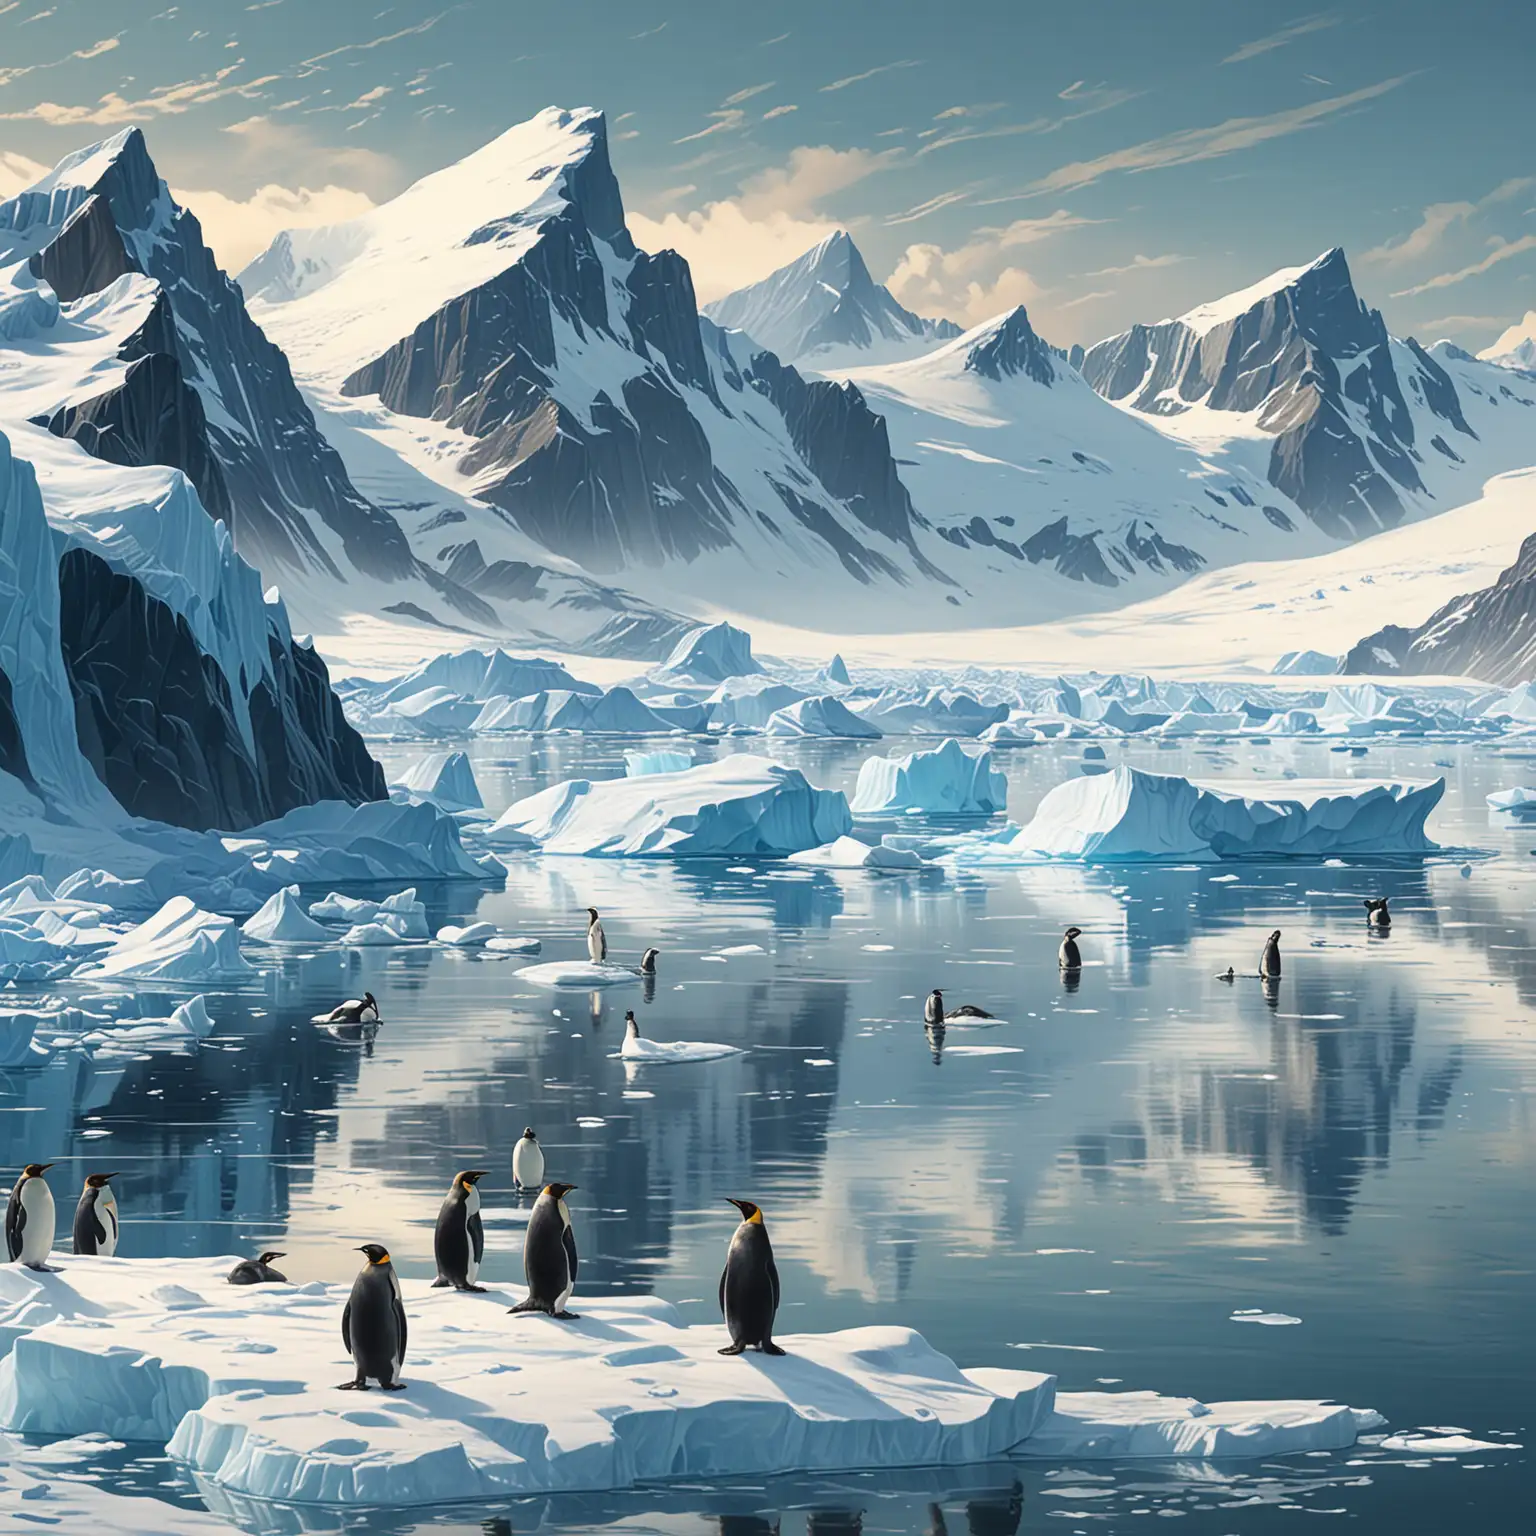 illustration, neuronalen Stiltransfer, hintergrund Die Antarktische Halbinsel: Die Antarktische Halbinsel ist eine Region von atemberaubender Schönheit, geprägt von schroffen Bergen, eisigen Fjorden und riesigen Gletschern. Hier erstrecken sich majestätische Eisberge entlang der Küste, während Pinguinkolonien das Ufer bevölkern. Die antarktische Landschaft ist geprägt von einer einzigartigen Mischung aus Eis und Meer, die eine faszinierende Kulisse für Abenteuer und Entdeckungen bietet.